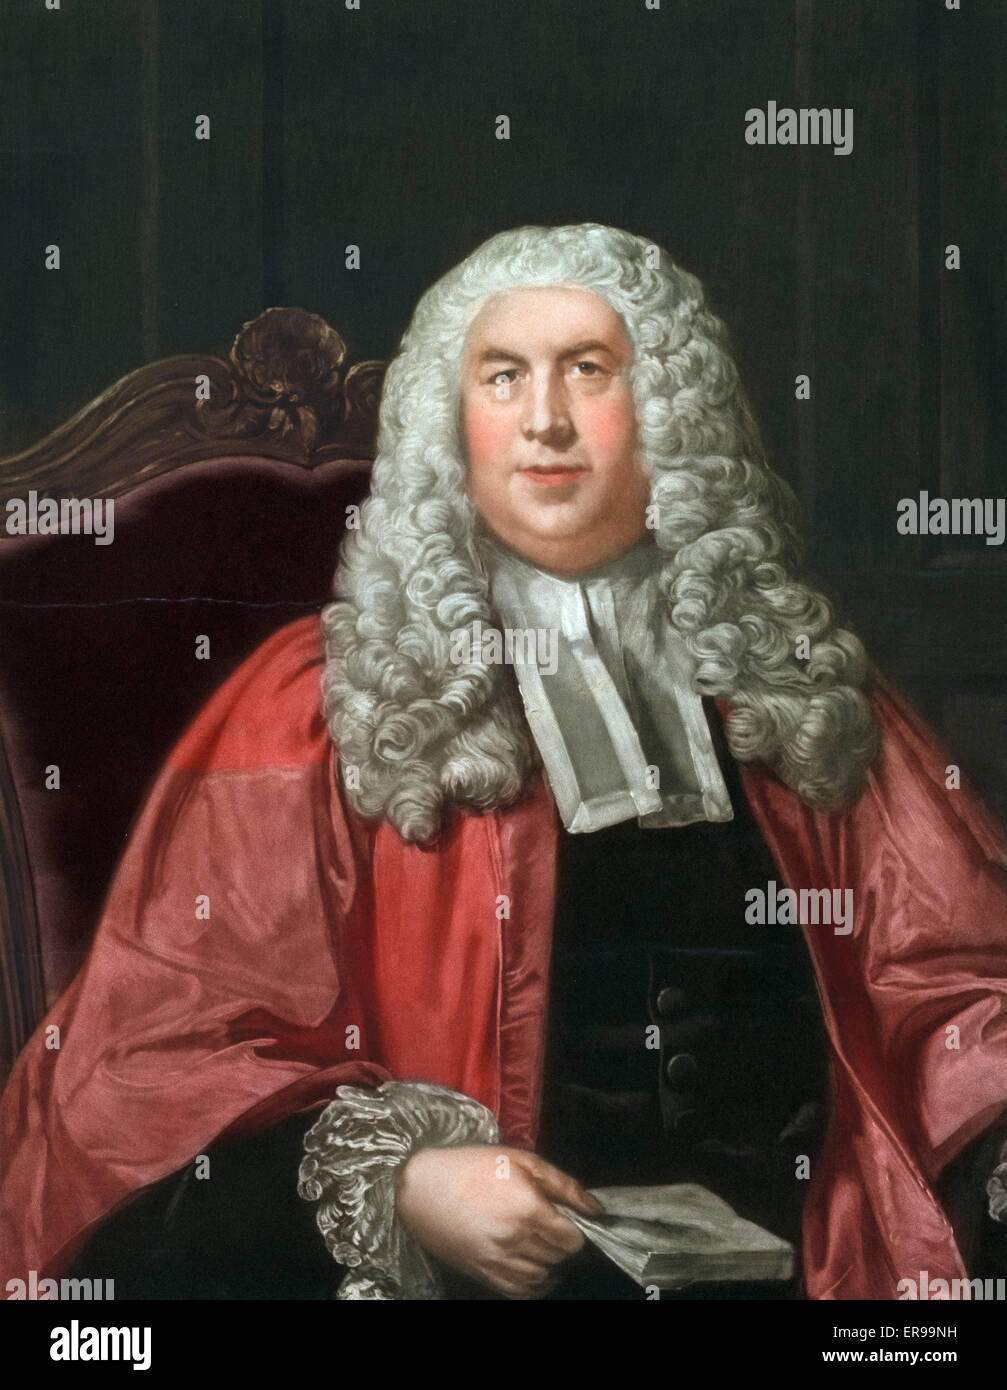 Sir William Blackstone, mezza lunghezza ritratto, seduto, leggermente rivolta verso sinistra. Data c1930. Foto Stock